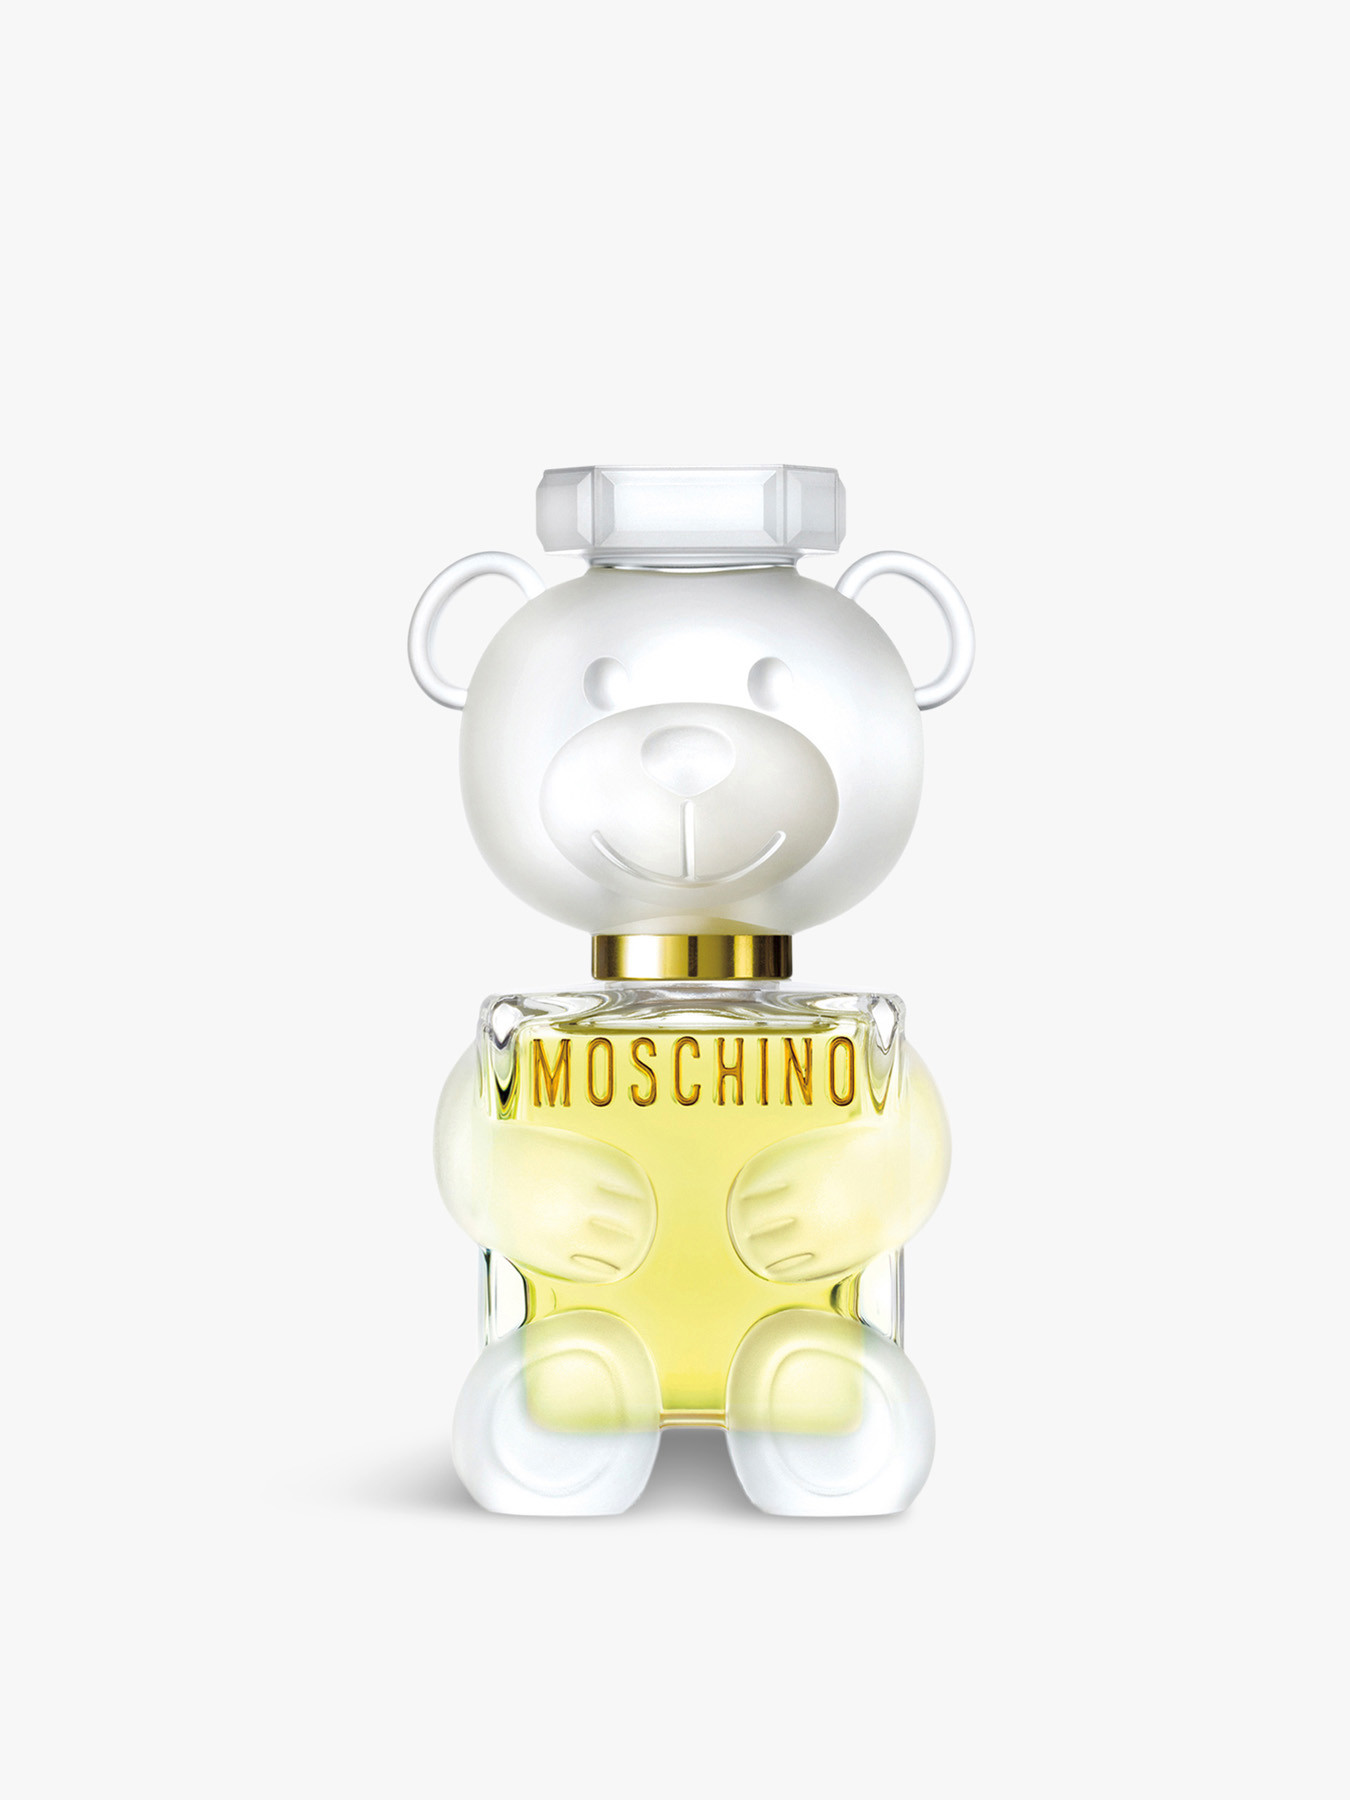 Moschino Toy2 Eau De Parfum 50ml